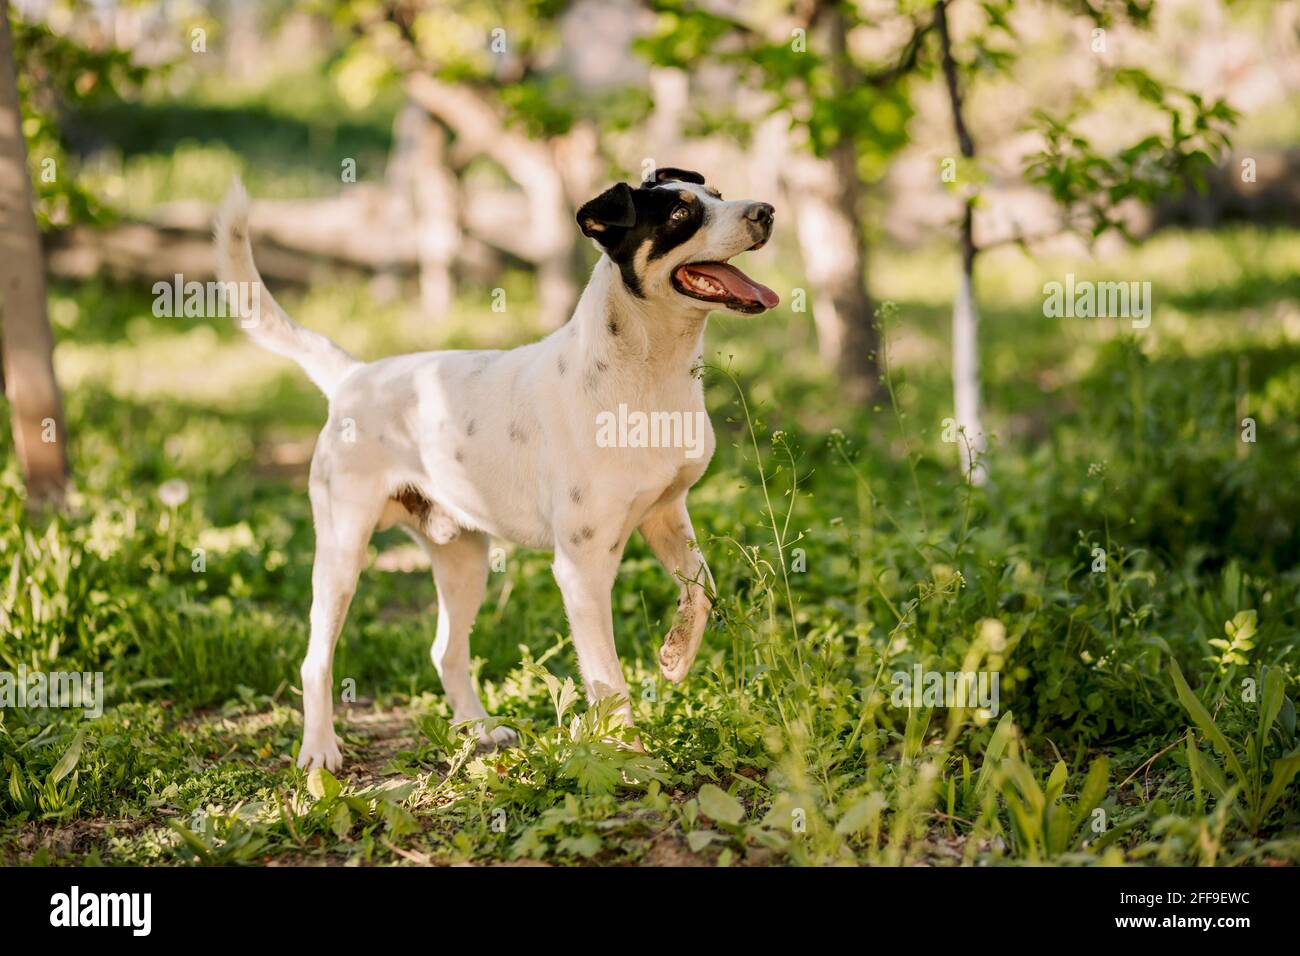 Voller Schuss von lustigen weißen Hund Jack russell Terrier auf Gras im Garten stehen und hob sein Bein Stockfoto